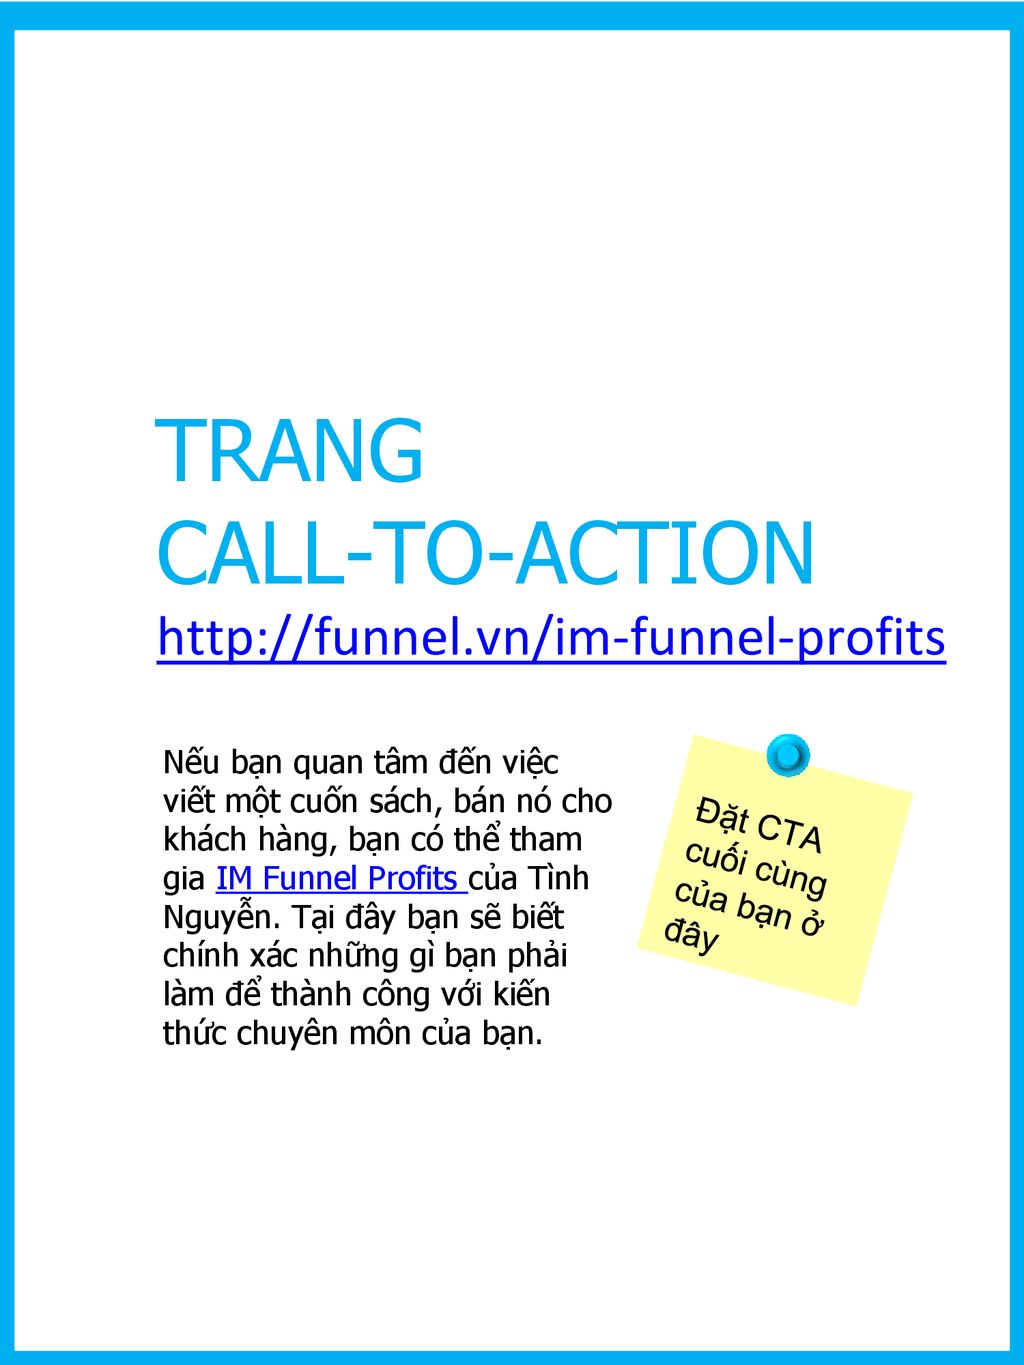 TRANG CALL-TO-ACTION